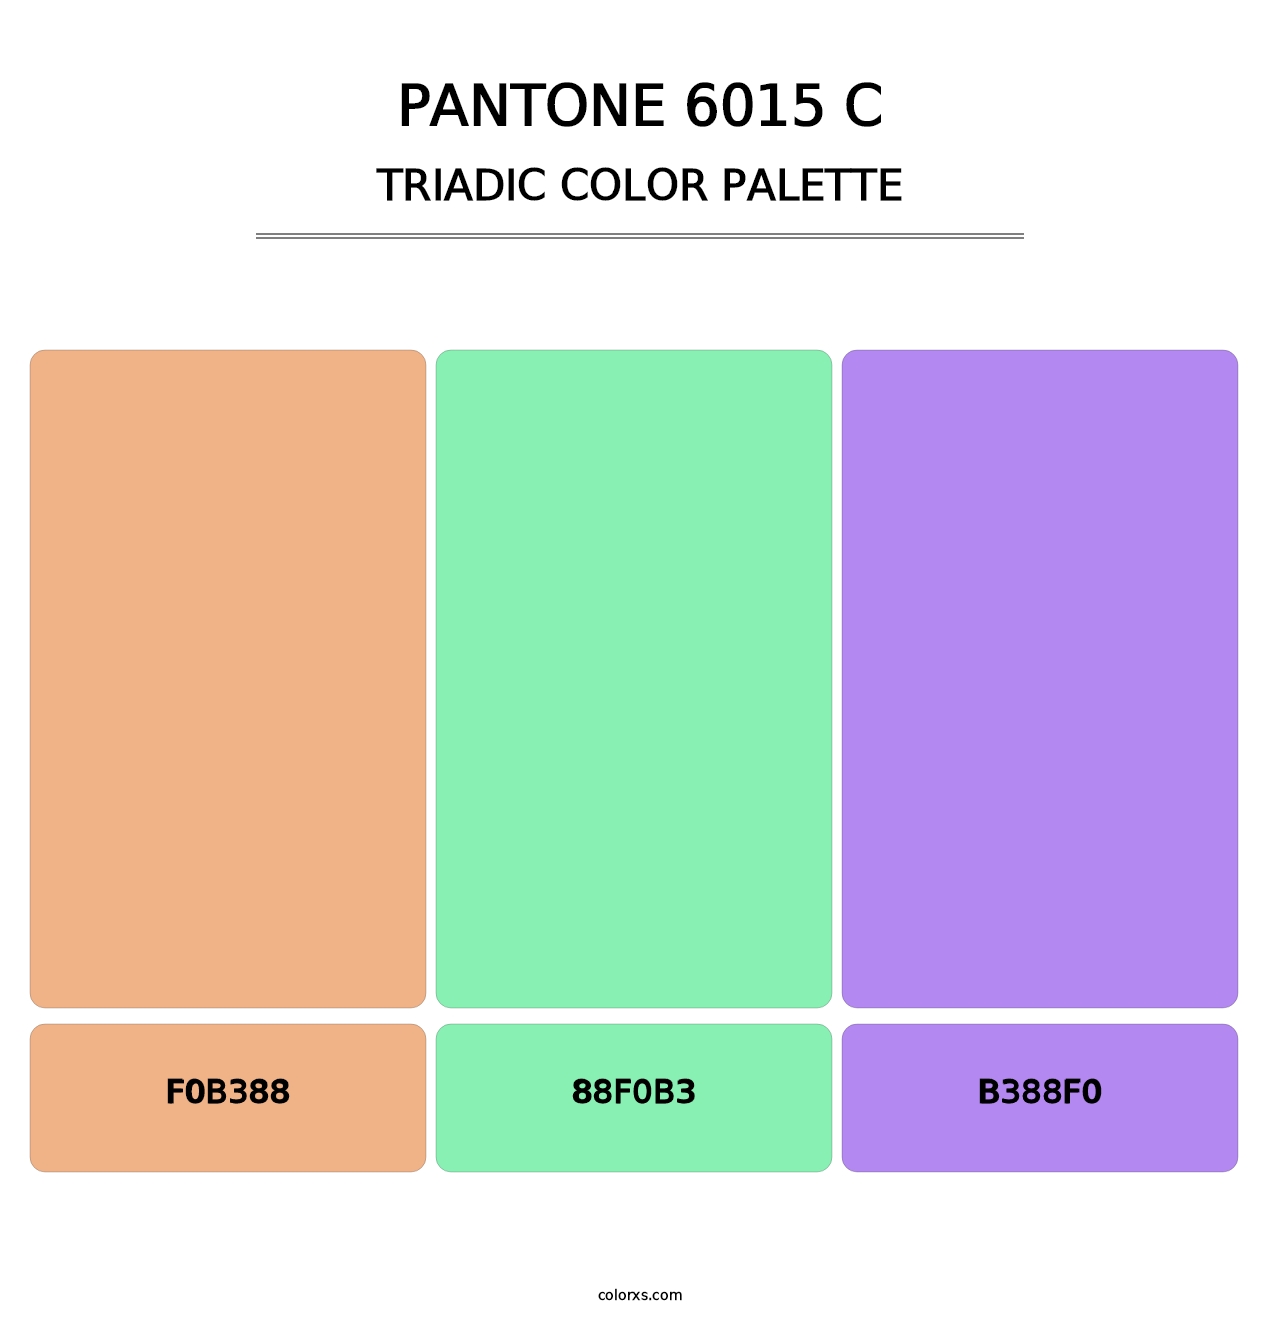 PANTONE 6015 C - Triadic Color Palette